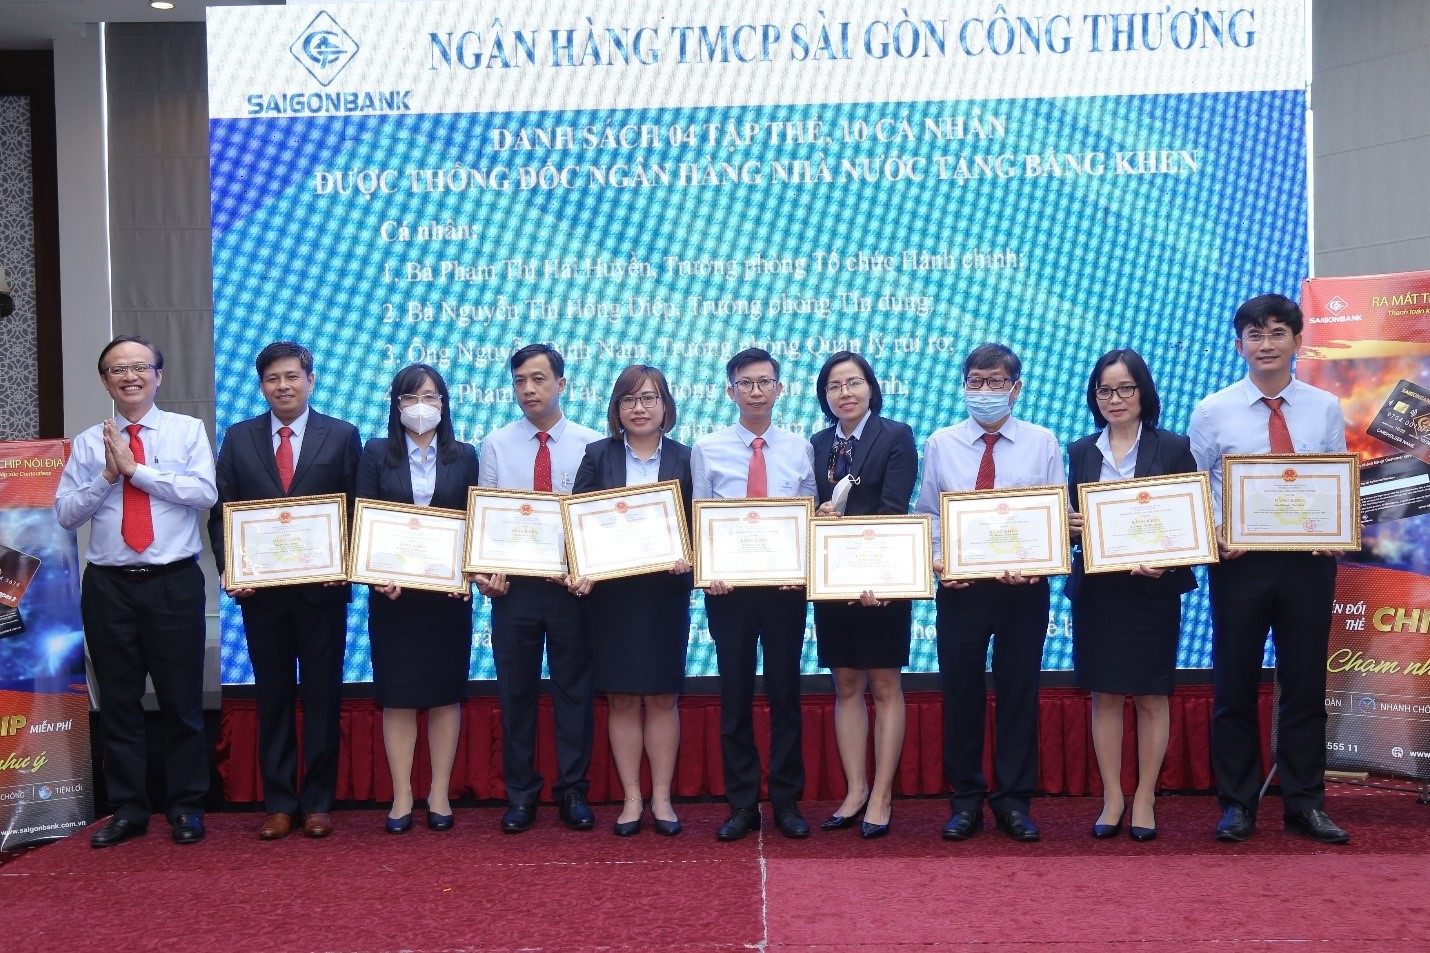 Ngân hàng TMCP Sài Gòn Công thương tổ chức hội nghị tổng kết tình hình hoạt động năm 2021 và triển khai nhiệm vụ kinh doanh năm 2022